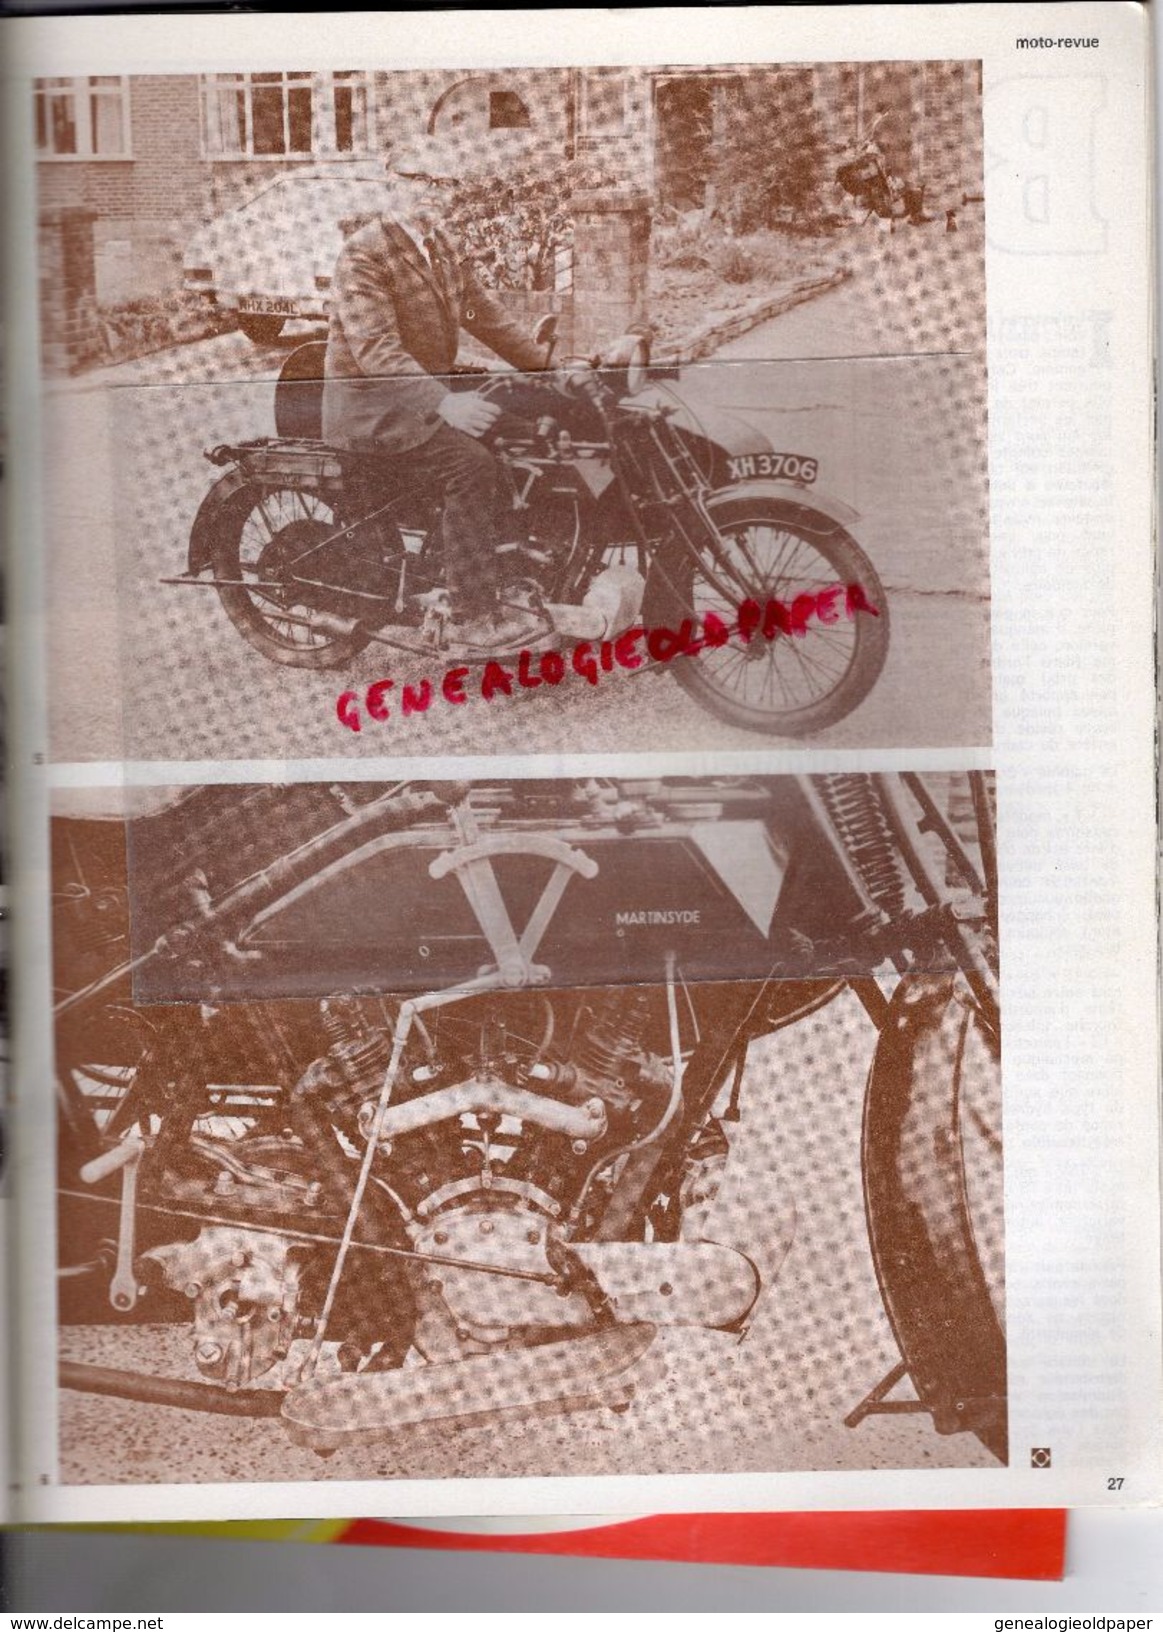 MOTO REVUE -N° 2125-18-5-1973-ESSAI LAVERDA 750 SF-TOUR DE FRANCE-HOCKENHEIM READ-MARLBORO-NOGARO-DOUGLAS 600-GILERA - Motorfietsen